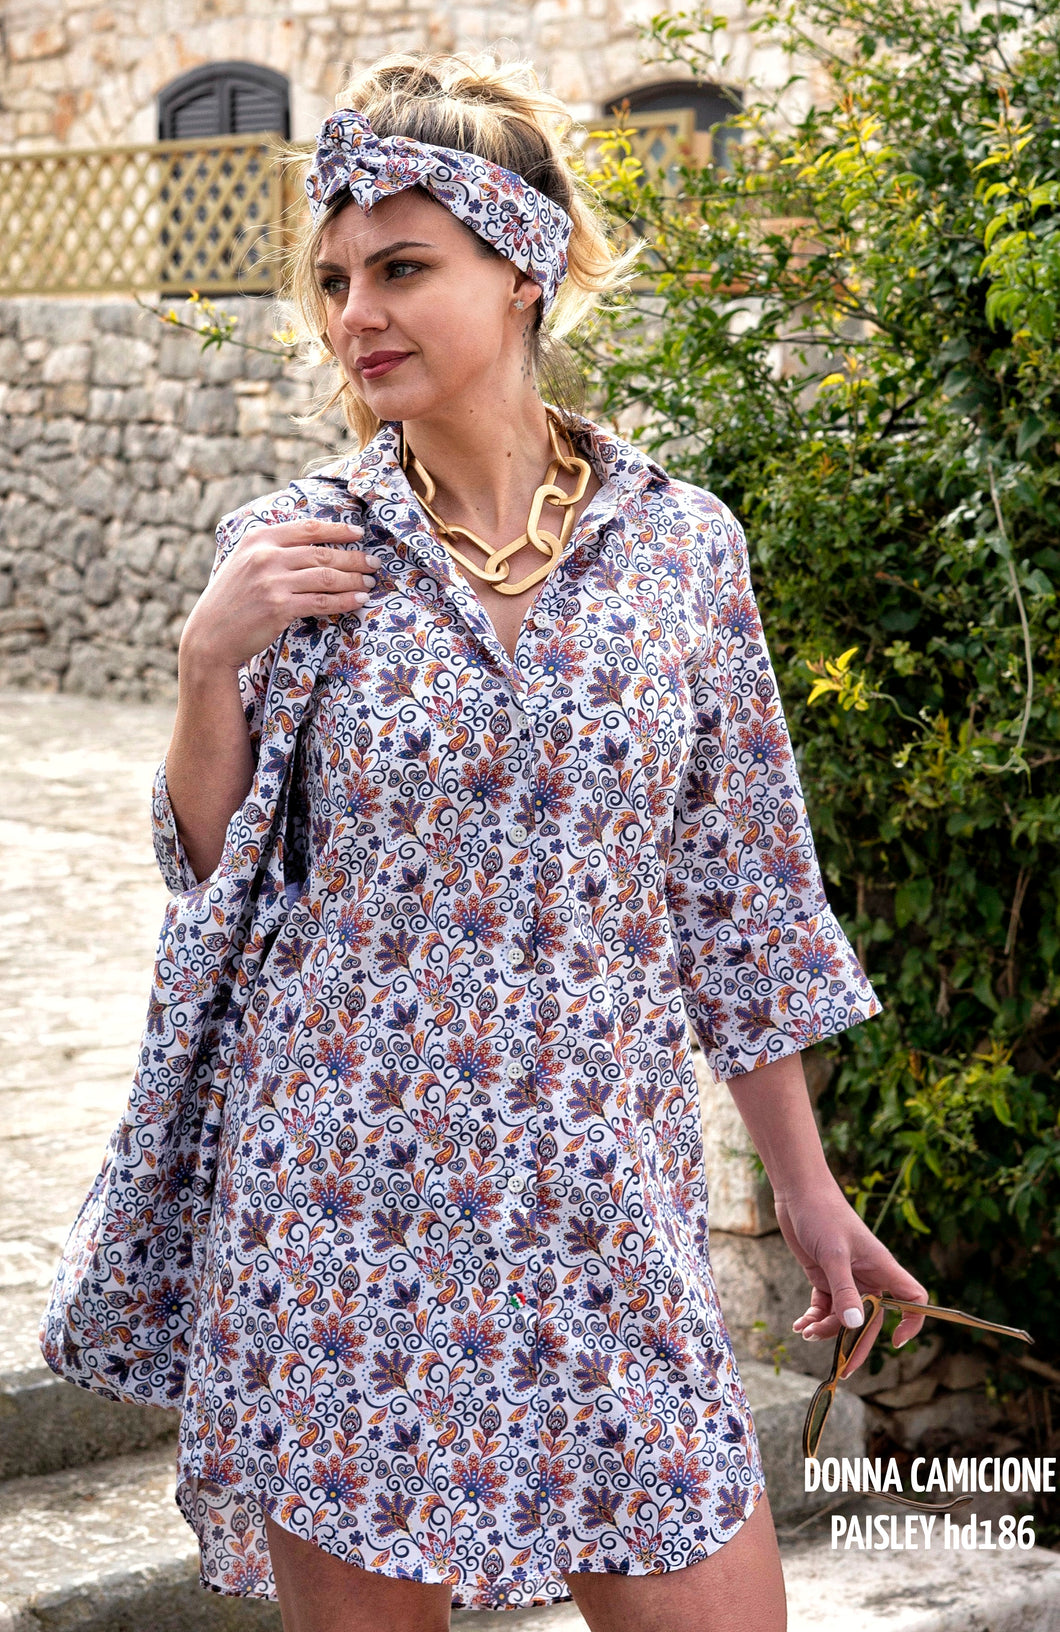 Camicia Donna Vestito cotone camicione fantasia paisley  made in italy dress shirt